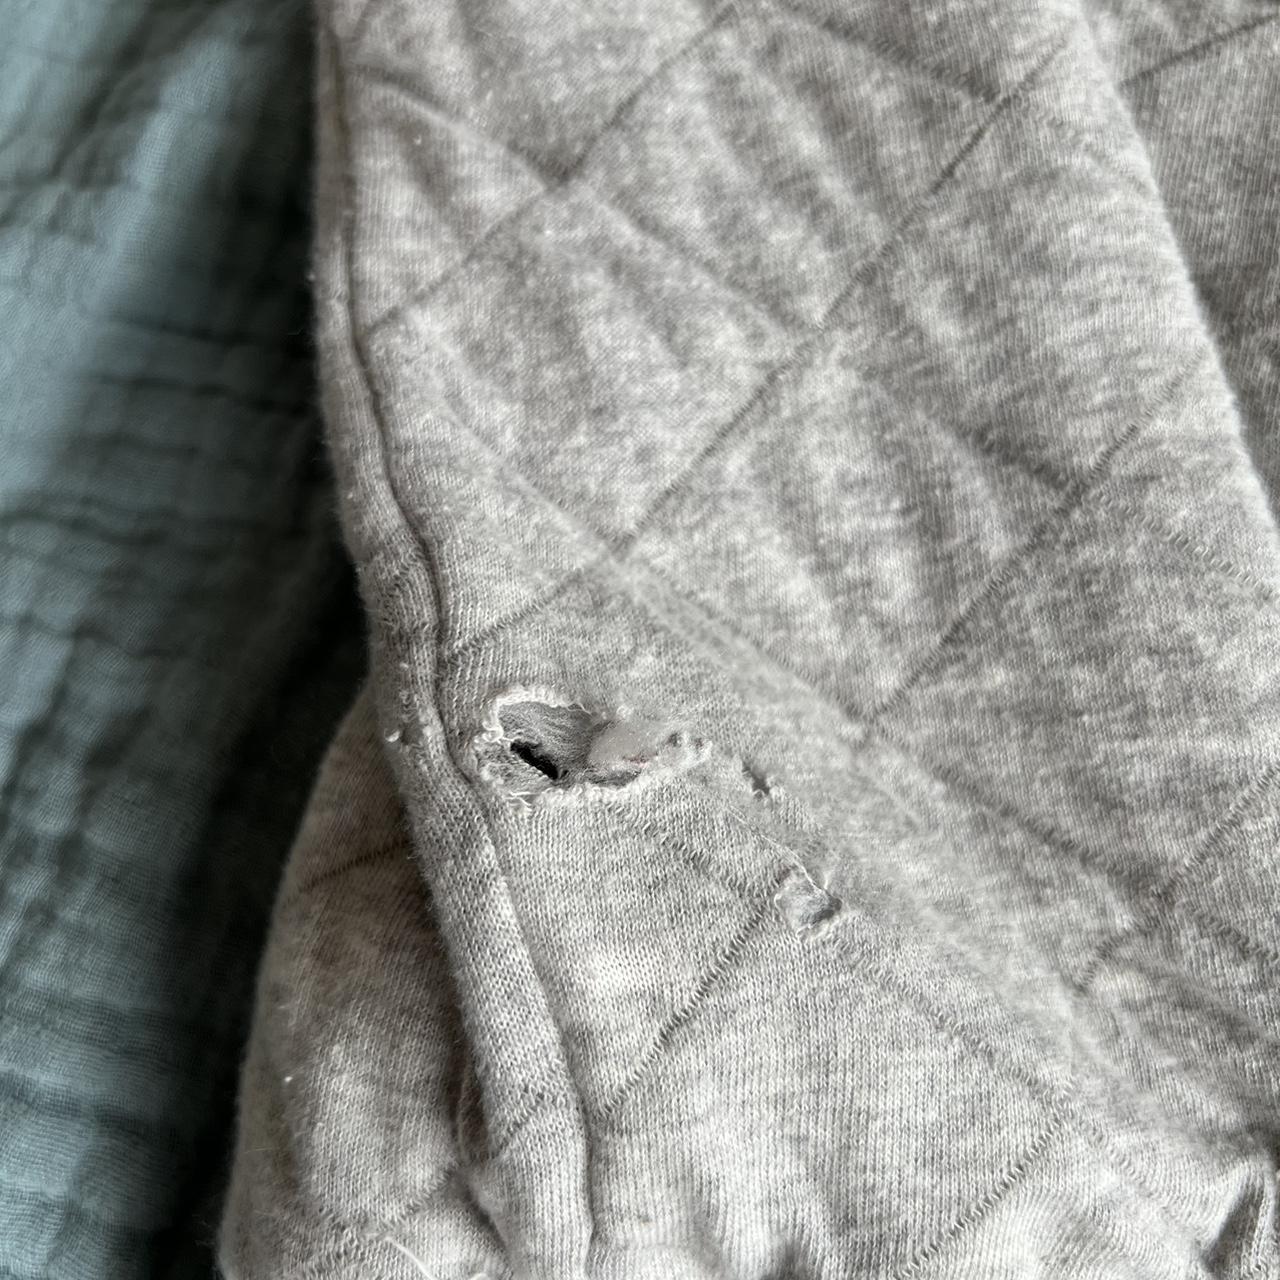 Grey finnisterre thermal hoodie. Made in Portugal... - Depop